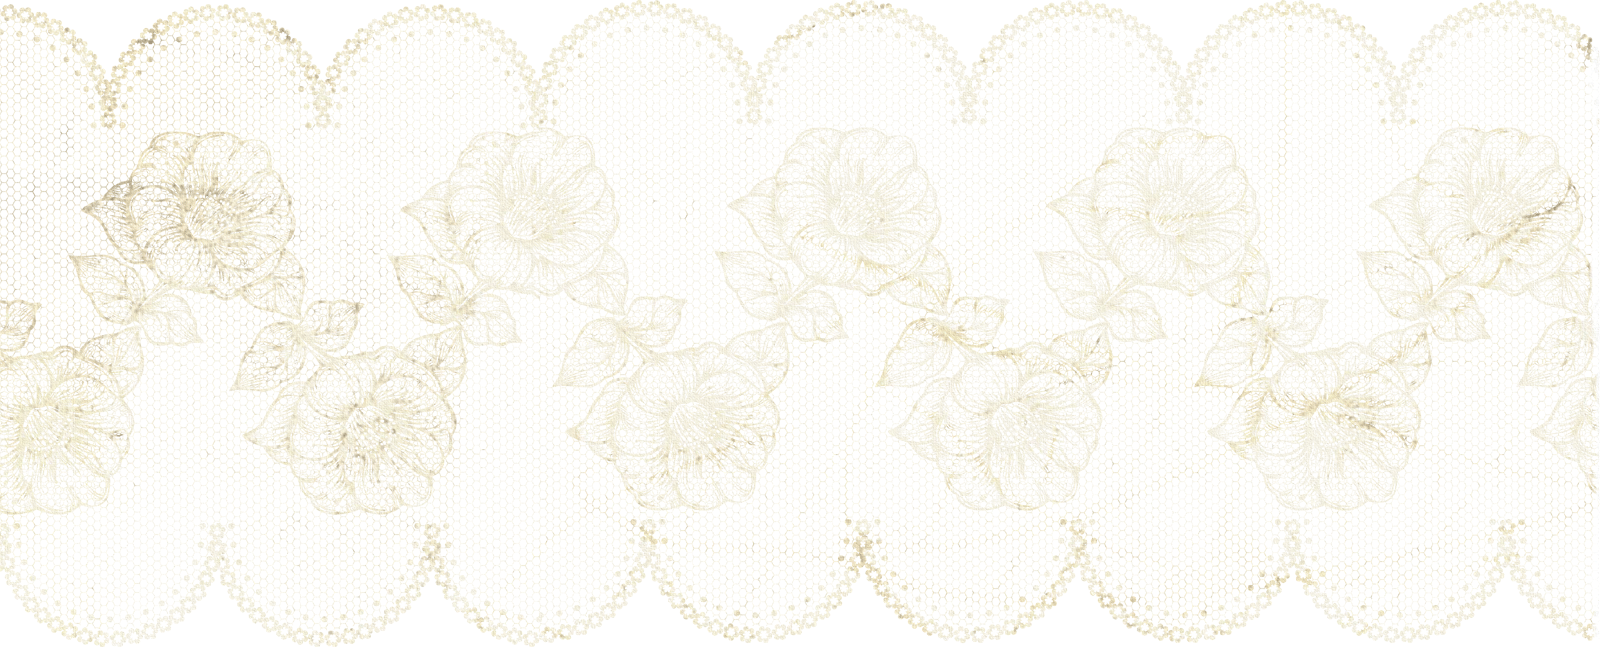 花のイラスト フリー素材 フレーム枠no 049 バラのレース